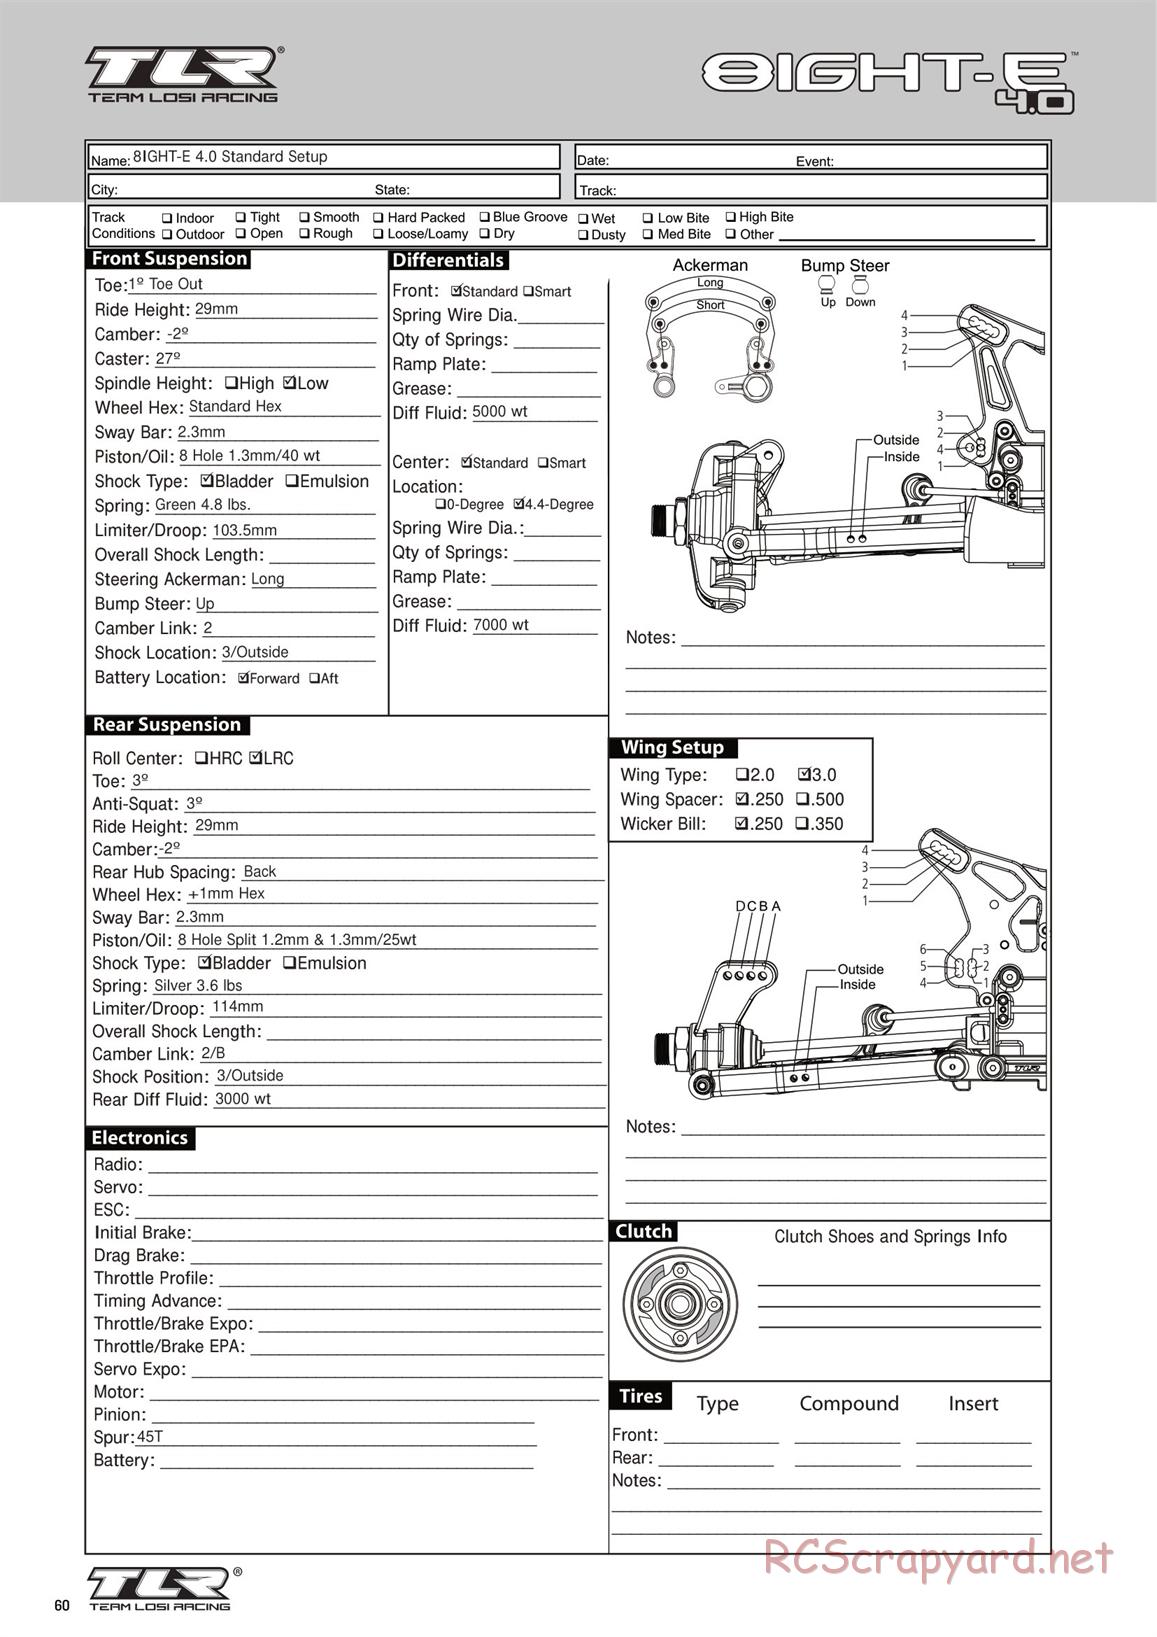 Team Losi - 8ight-E 4.0 - Manual - Page 60